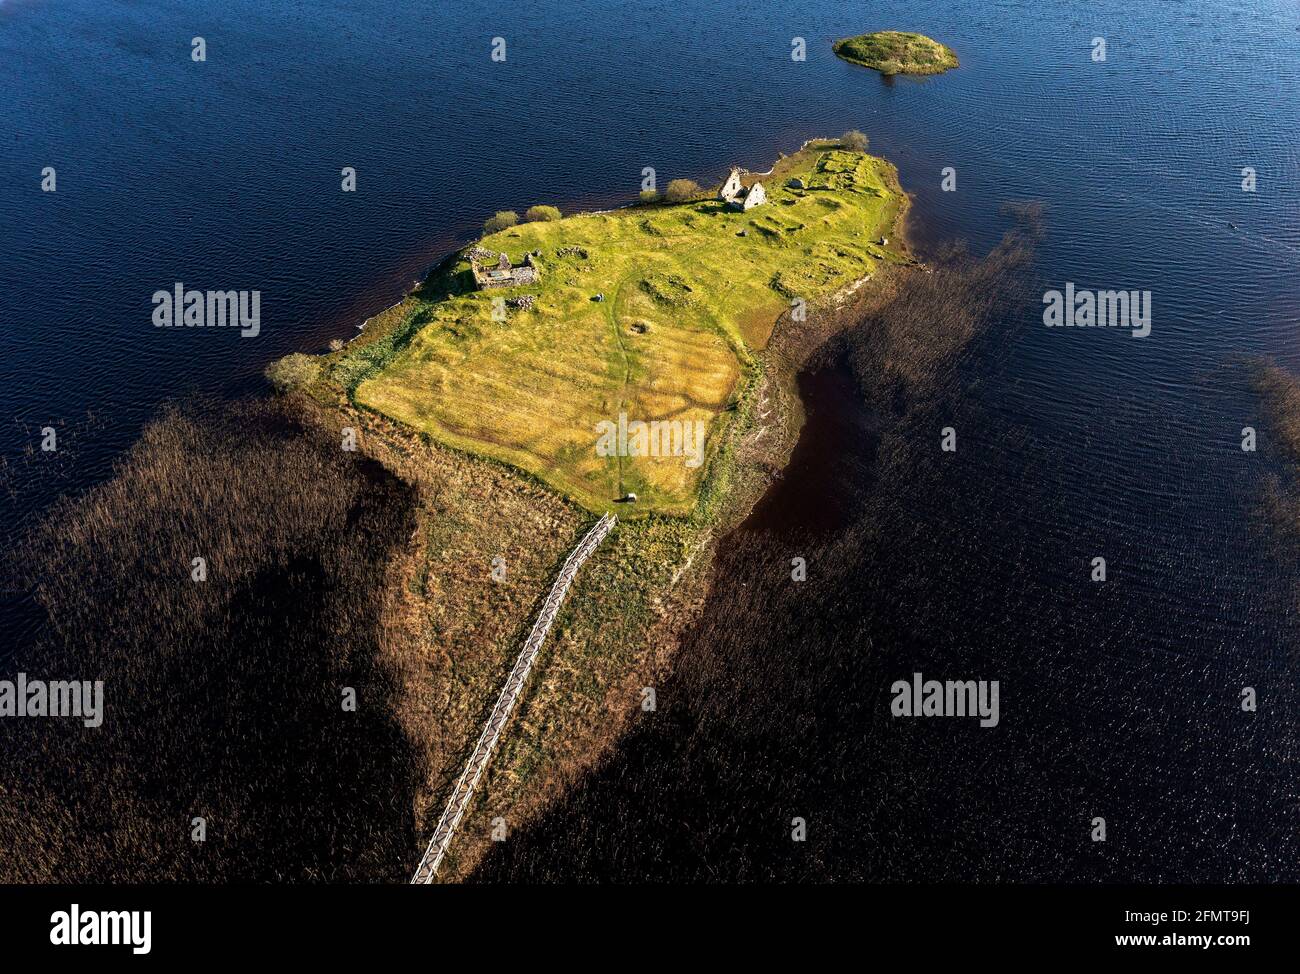 Luftaufnahme der historischen Stätte von Finlaggan auf Eilean Mòr in Loch Finlaggan, Islay. Finlaggan war der Sitz der Herren der Inseln und von Clan Donald. Stockfoto